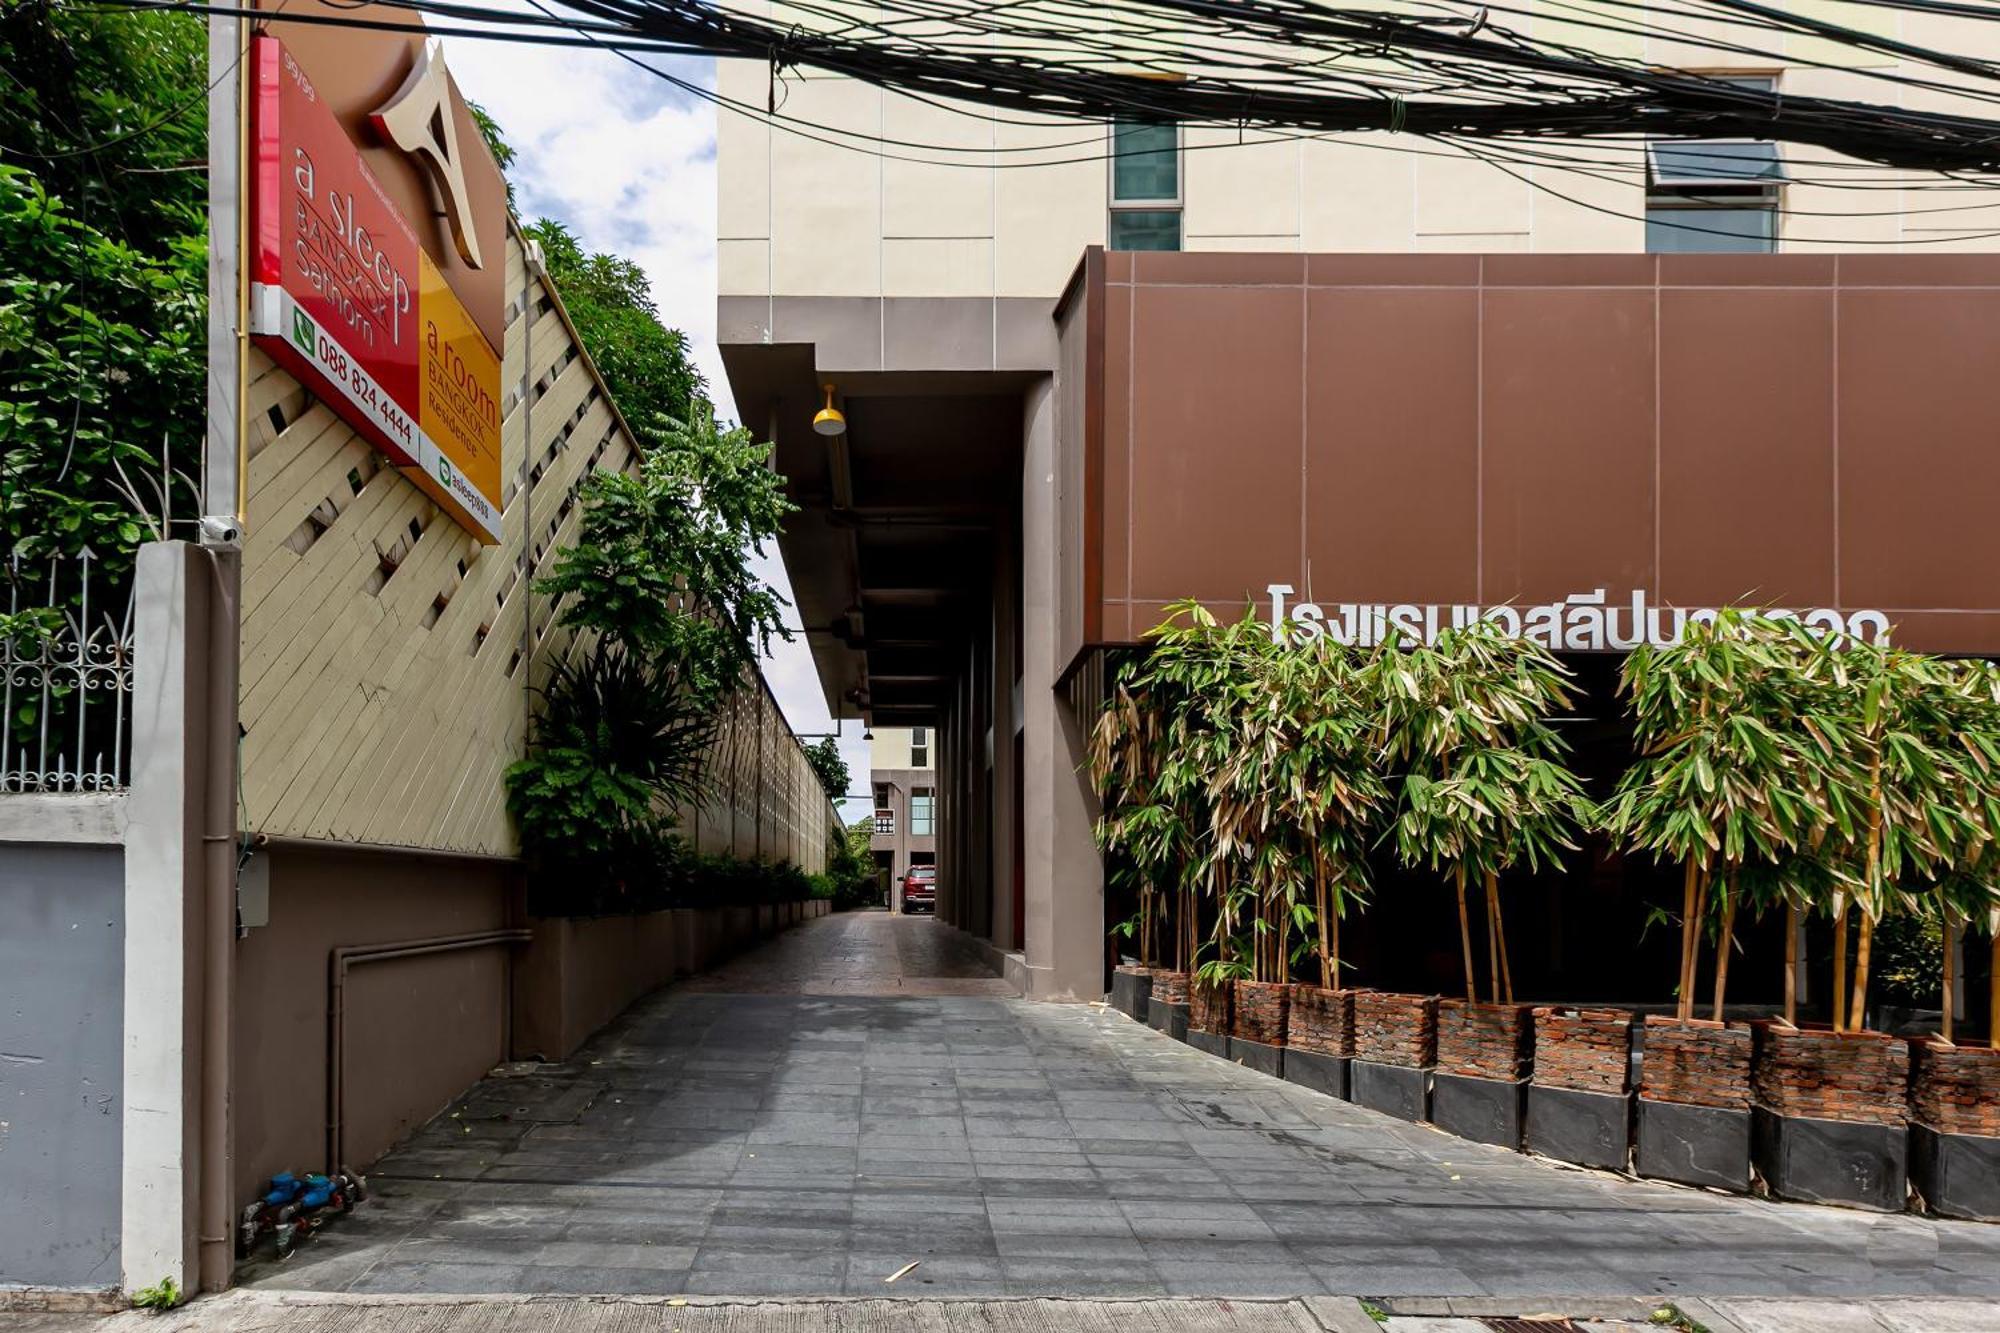 Hotel A Sleep Bangkok Sathorn Zewnętrze zdjęcie